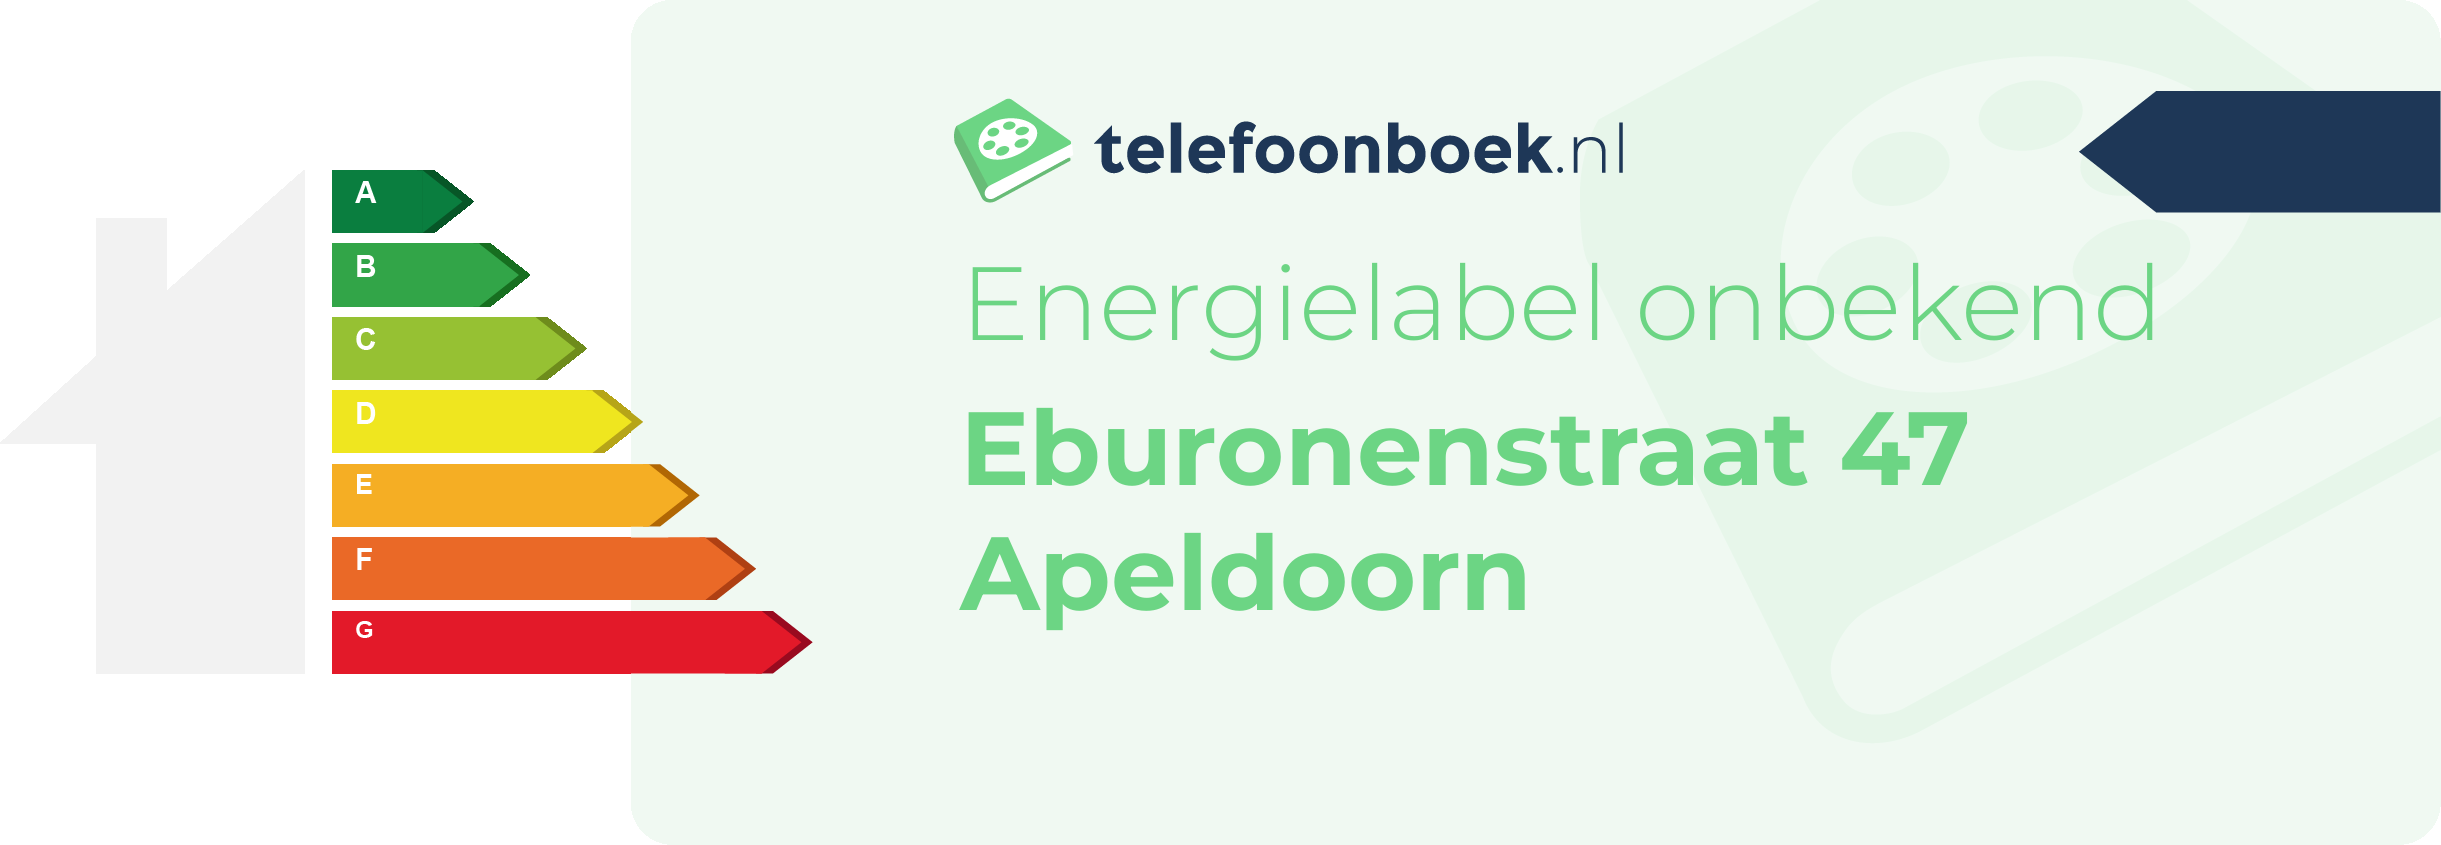 Energielabel Eburonenstraat 47 Apeldoorn